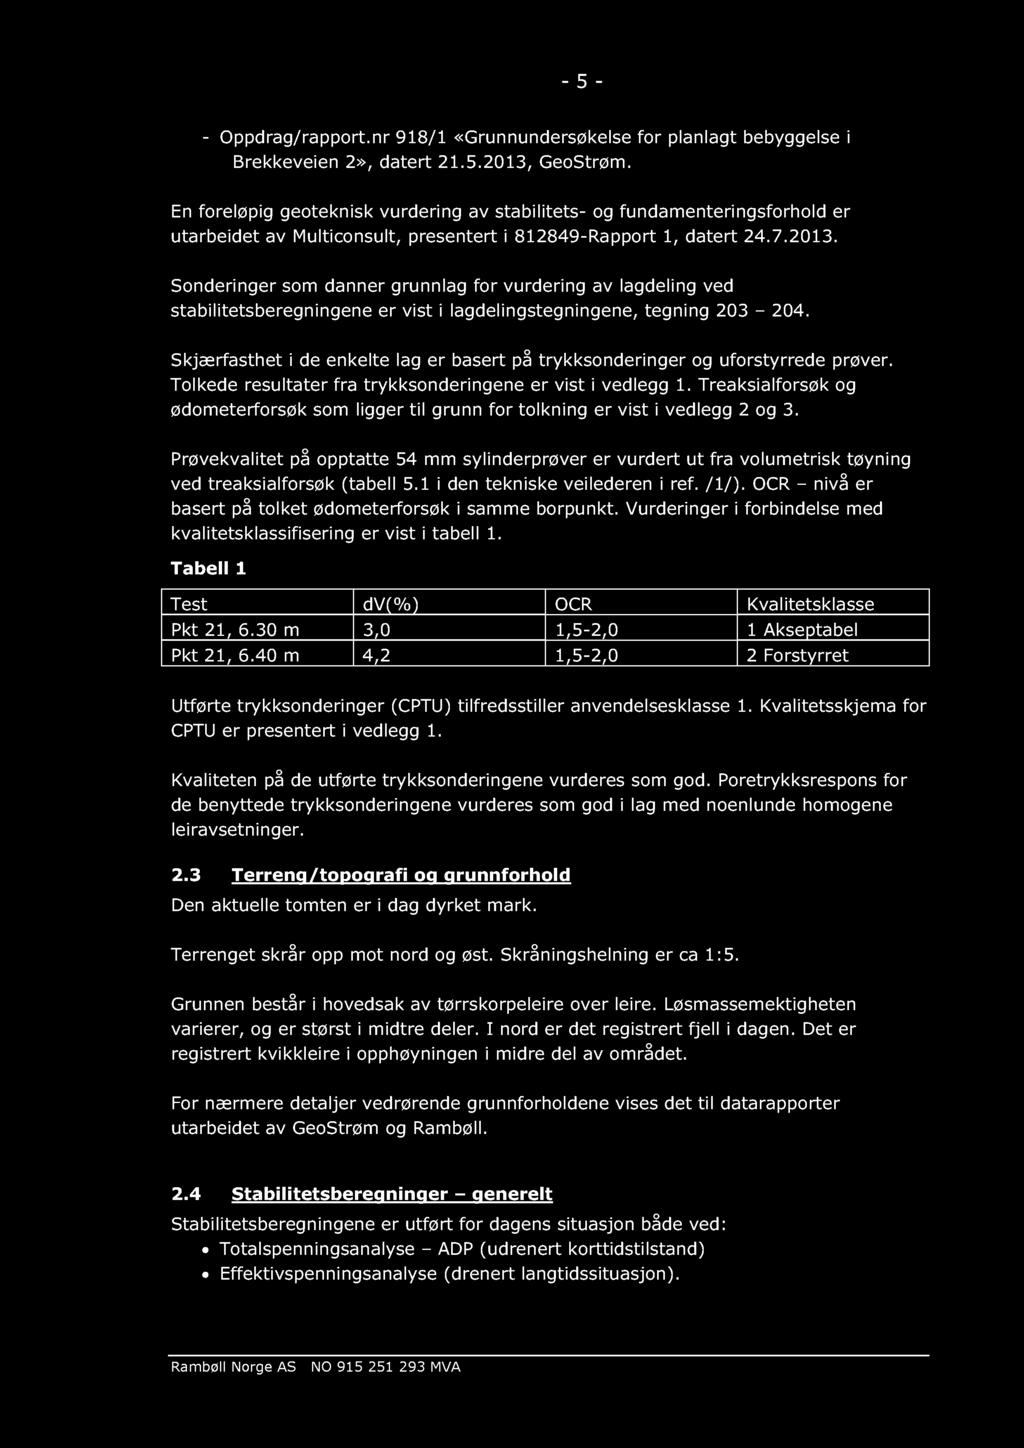 - 5 - - Oppdrag/rapport.nr 918/1 «Grunnundersø kelse for planlagt bebyggelse i Brekkeveien 2», datert 21.5.2013, GeoStrøm.